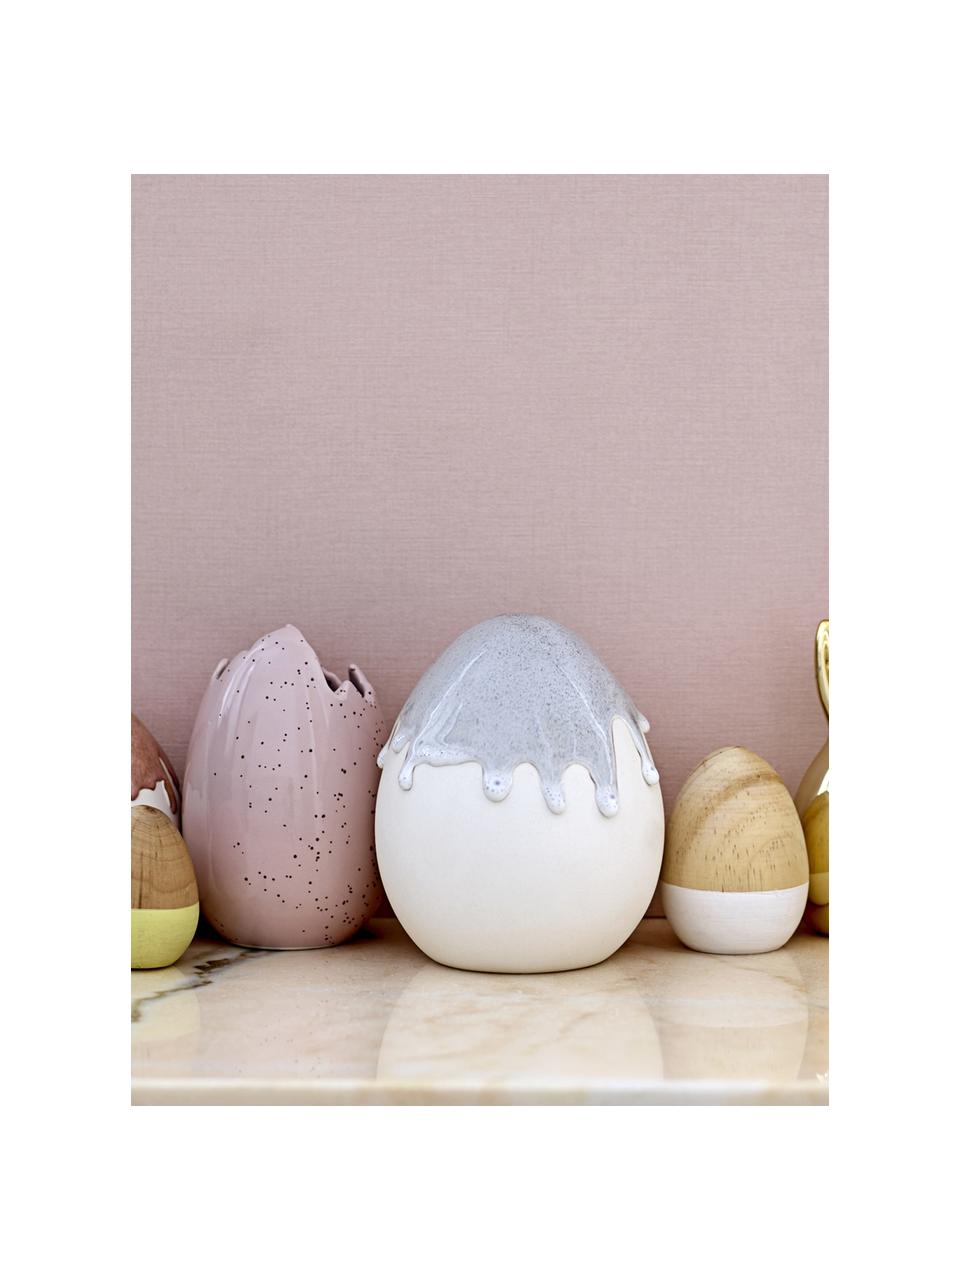 Œuf décoratif Egg, Bois de bouleau, laqué, Bouleau, blanc, Ø 7 x haut. 9 cm